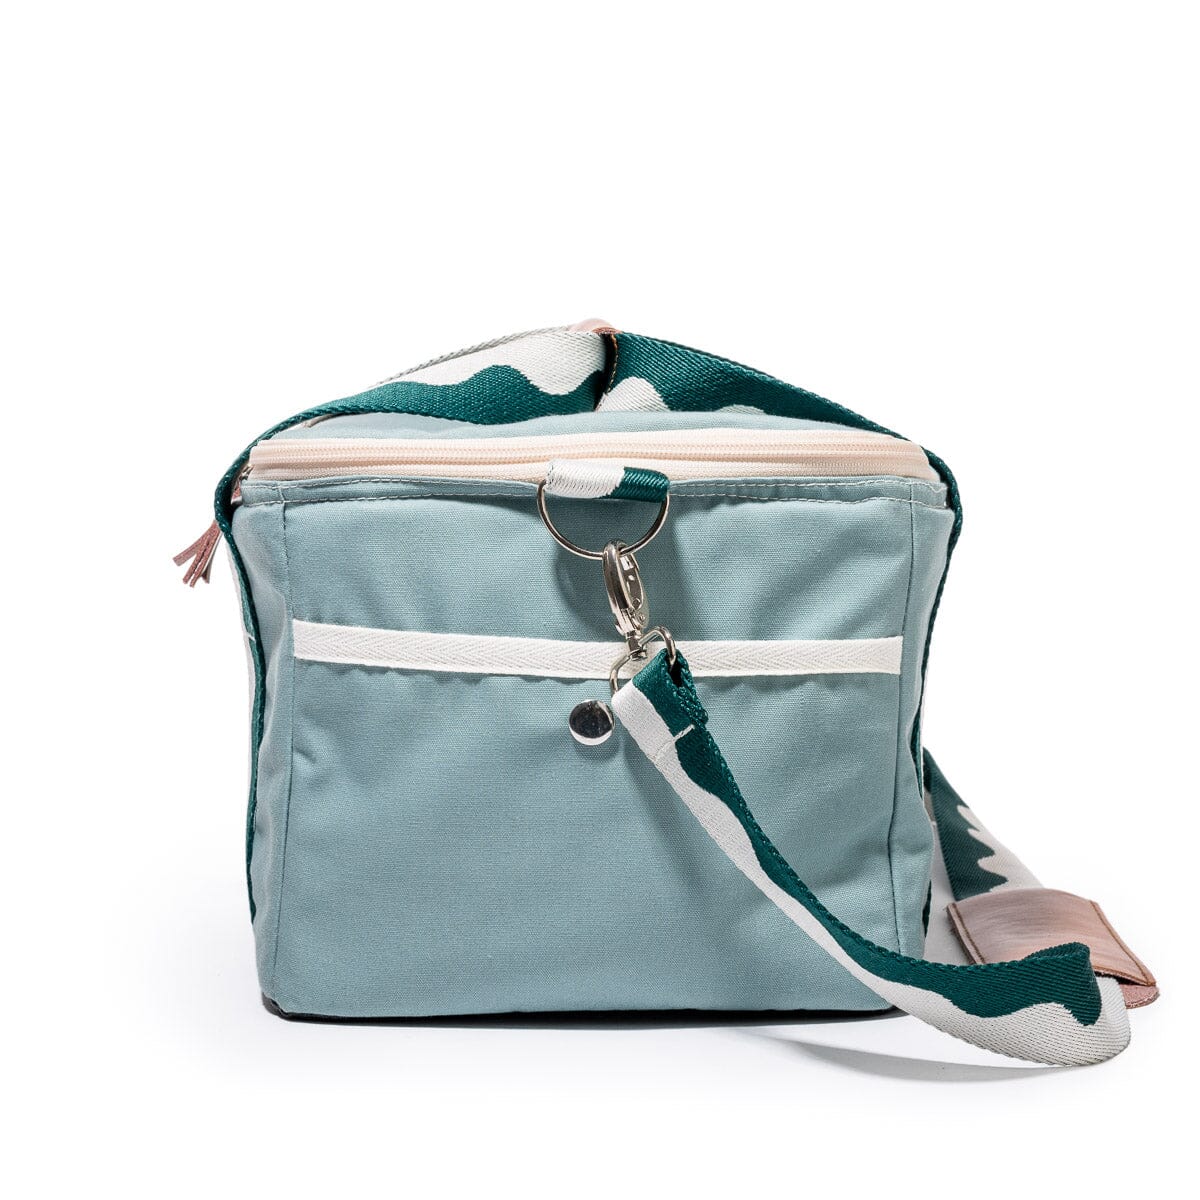 The Premium Cooler Bag - Rivie Green Premium Cooler Business & Pleasure Co 